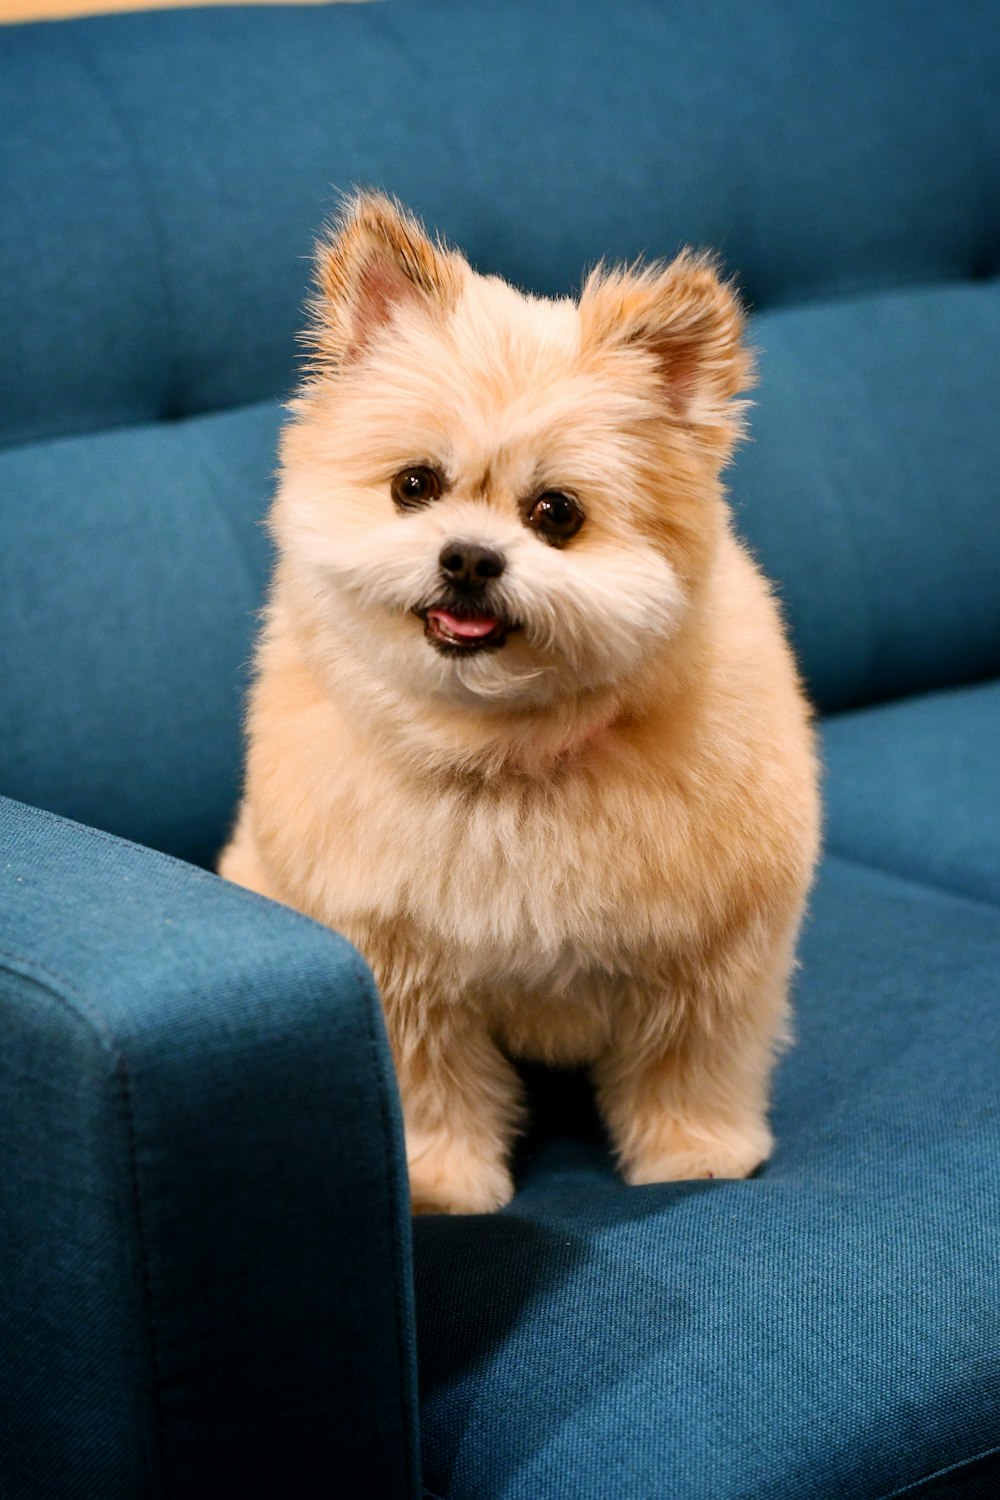 Ein kleiner brauner Hund sitzt auf einer blauen Couch